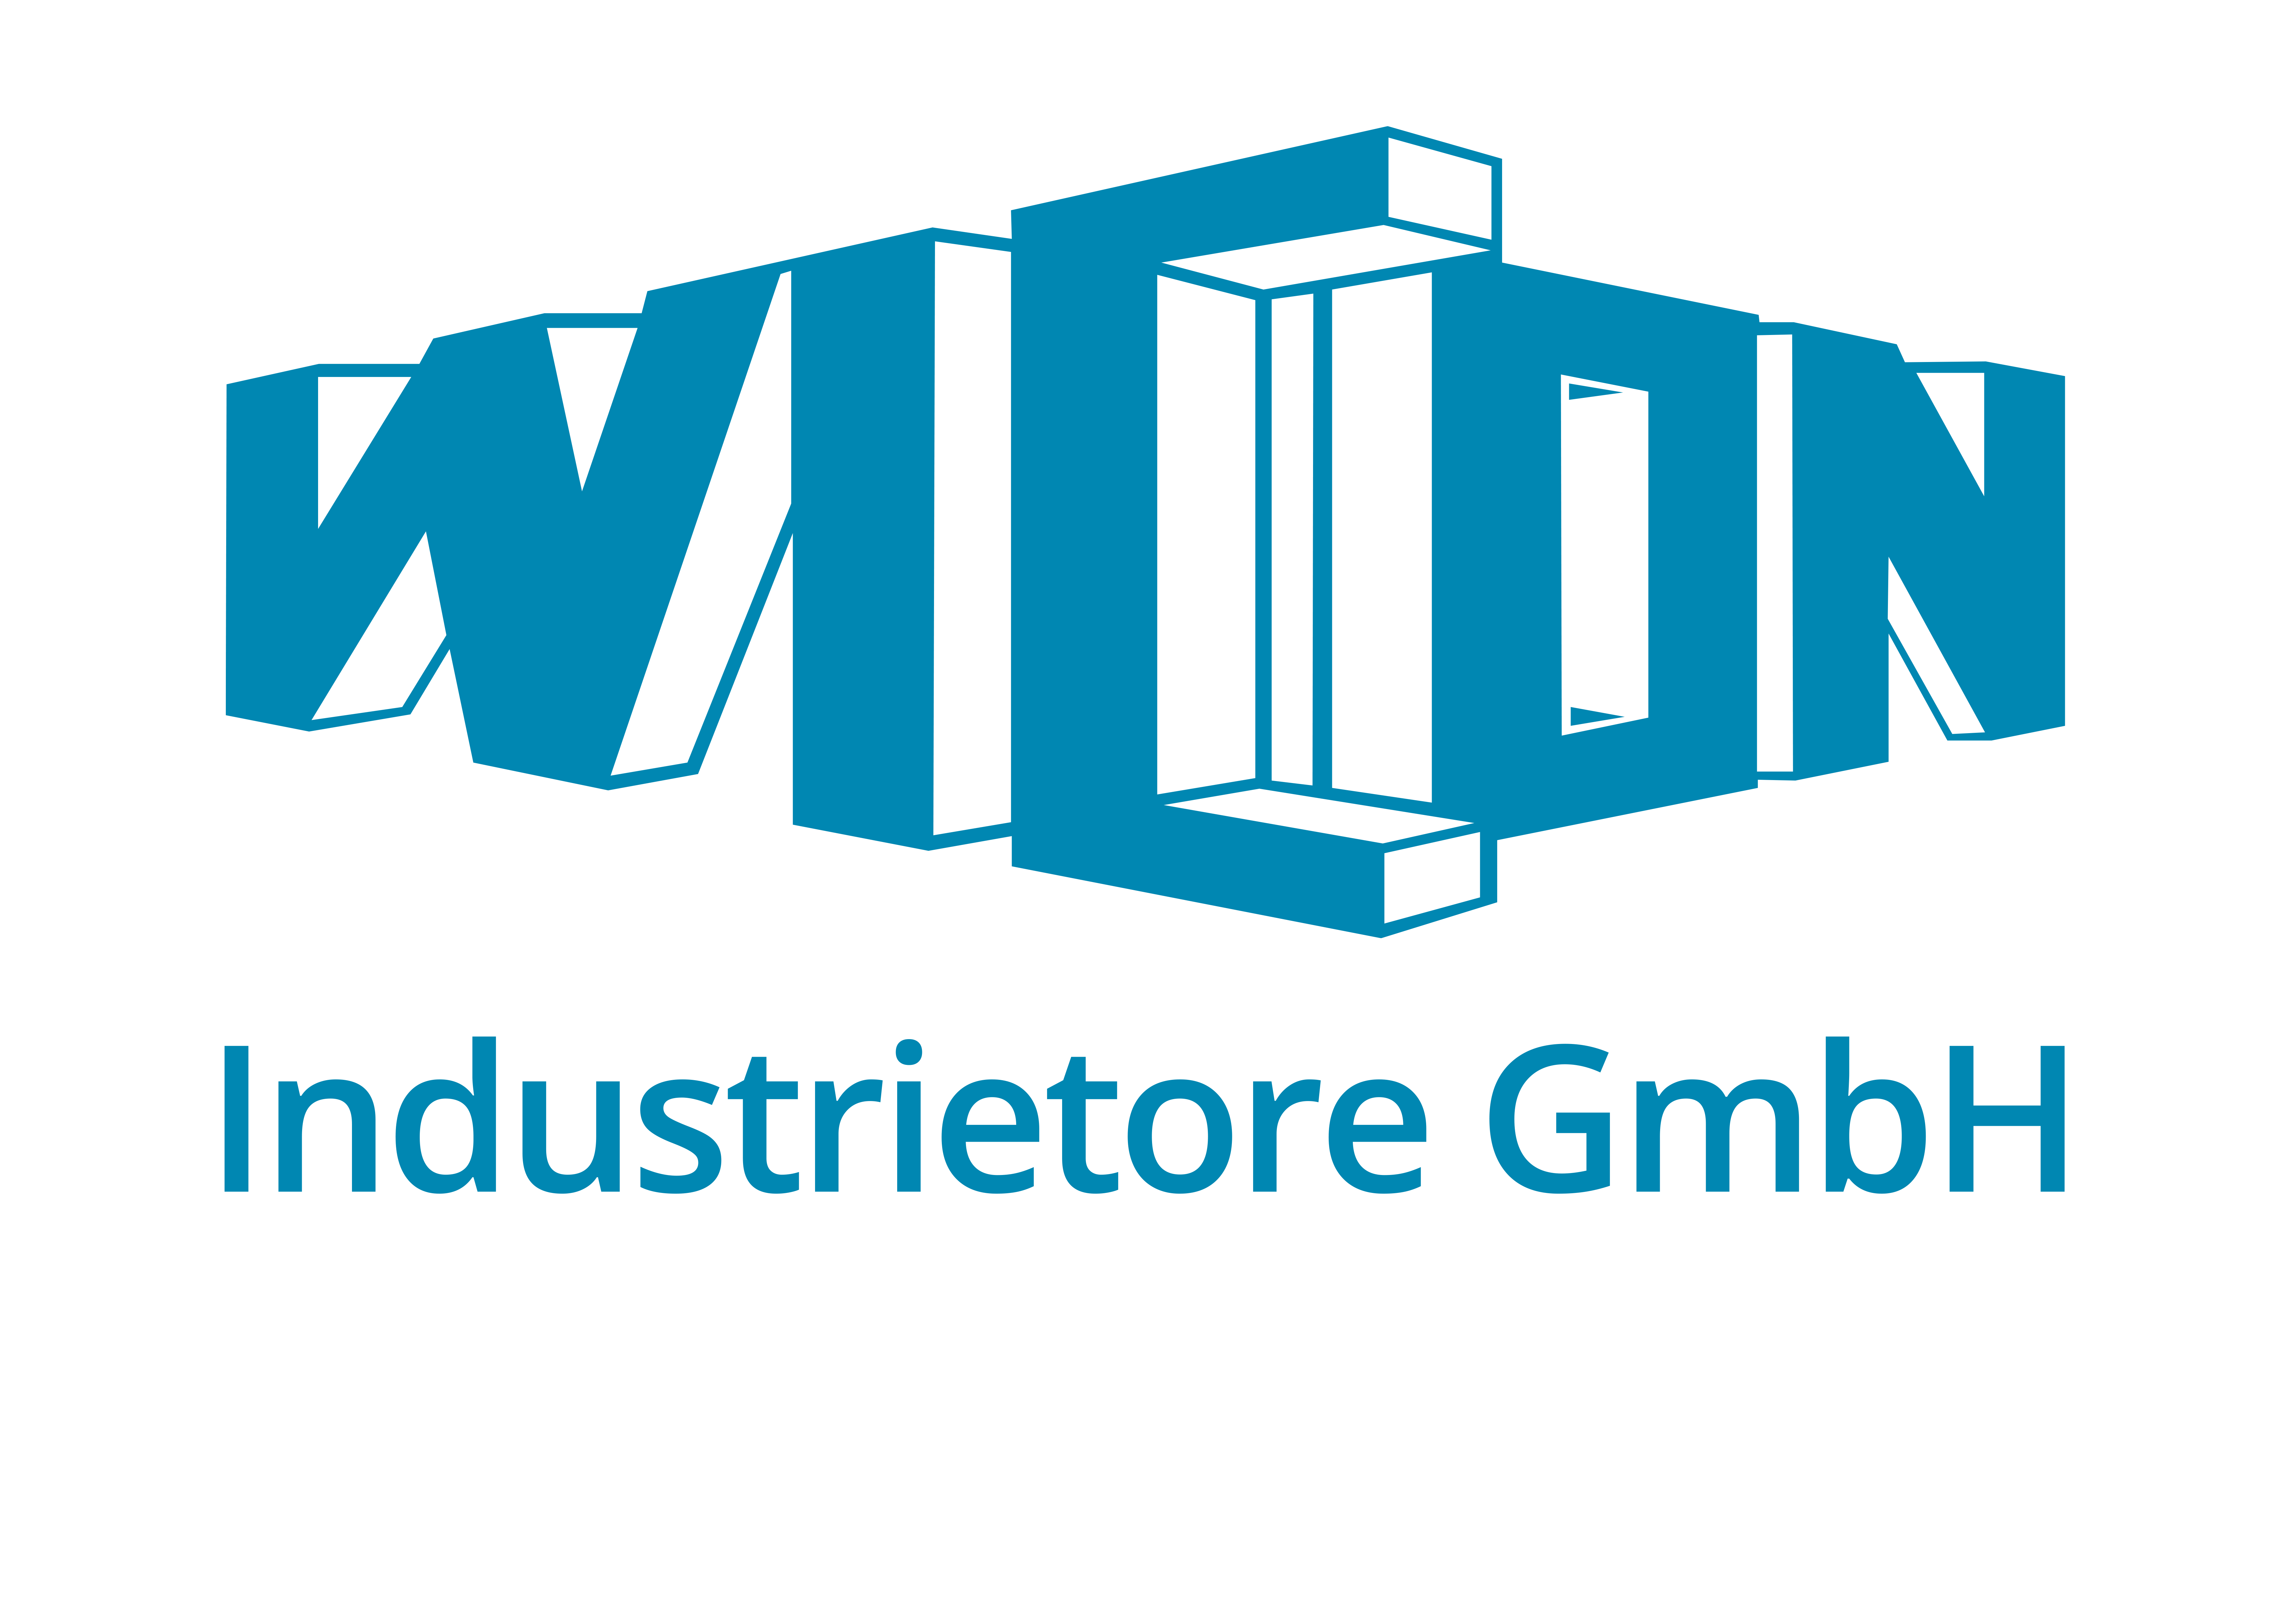 WICON Industrietore GmbH